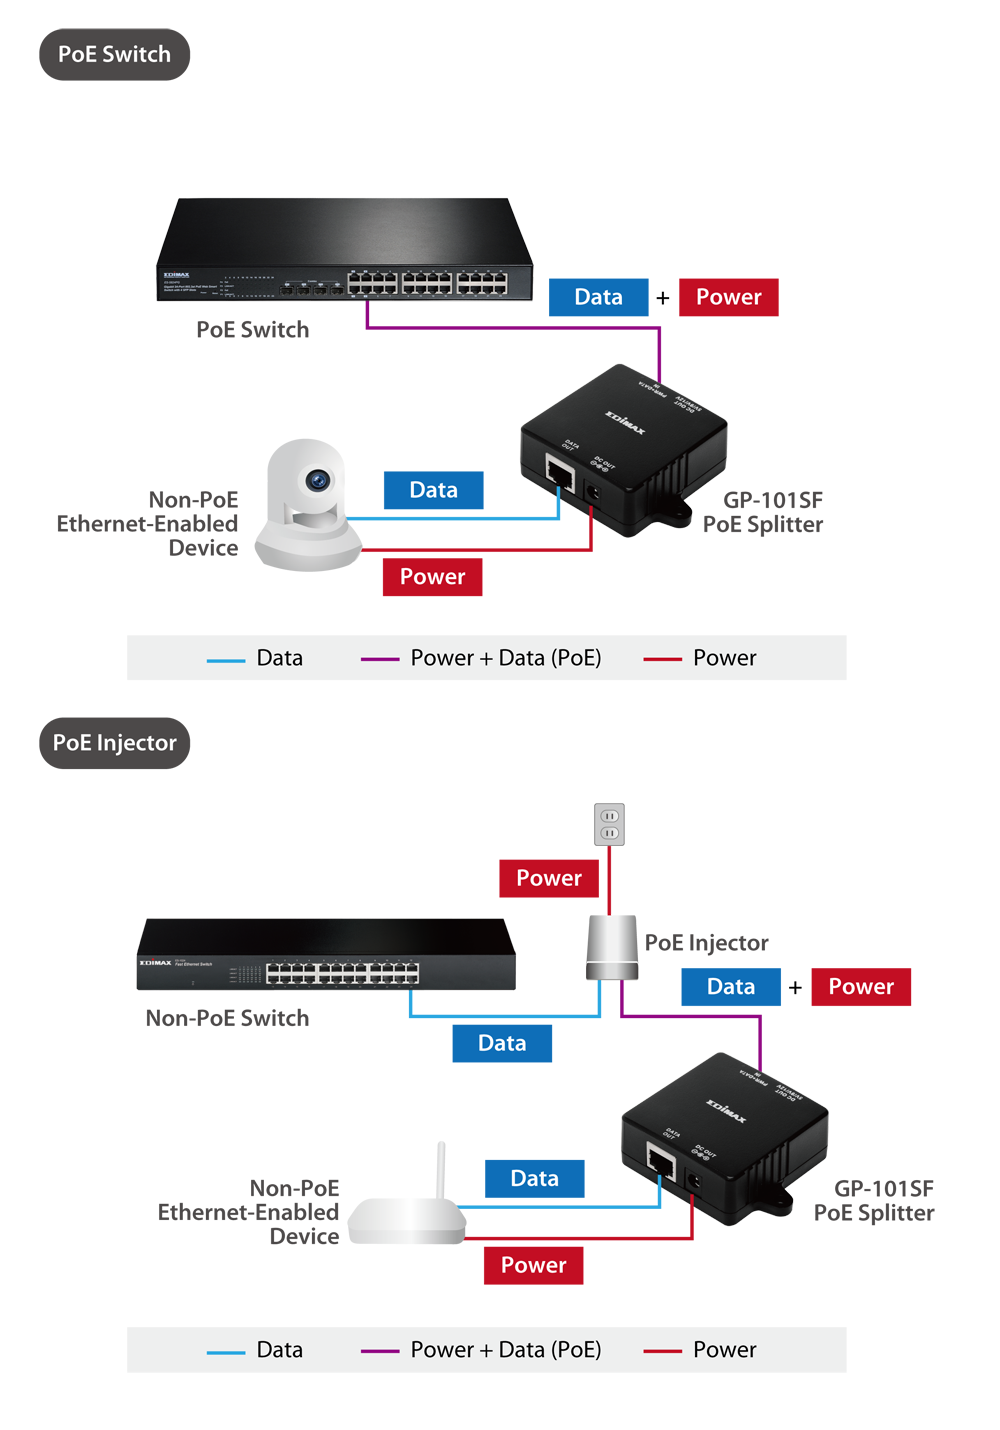 Edimax Gigabit PoE Splitter with Adjustable 5V DC, 9V DC or 12V DC Output GP-101SF_Application_Diagram.png